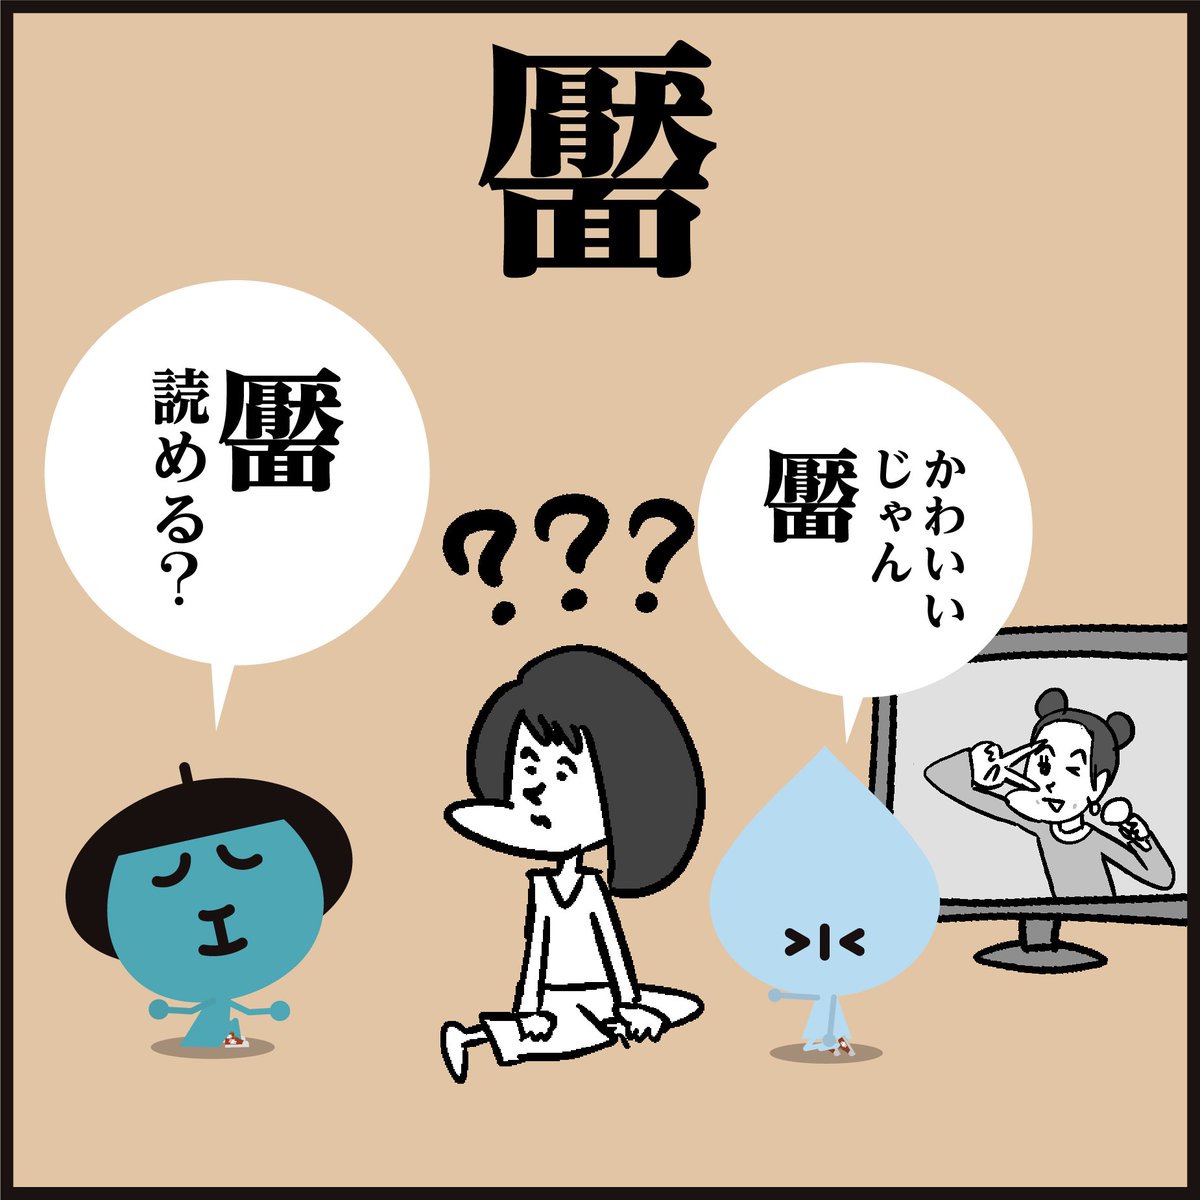 漢字【靨】読めましたか〜?
😅イメージと違いますよね。
#イラスト #豆知識 #クイズ 
#4コマ漫画 #可愛い 